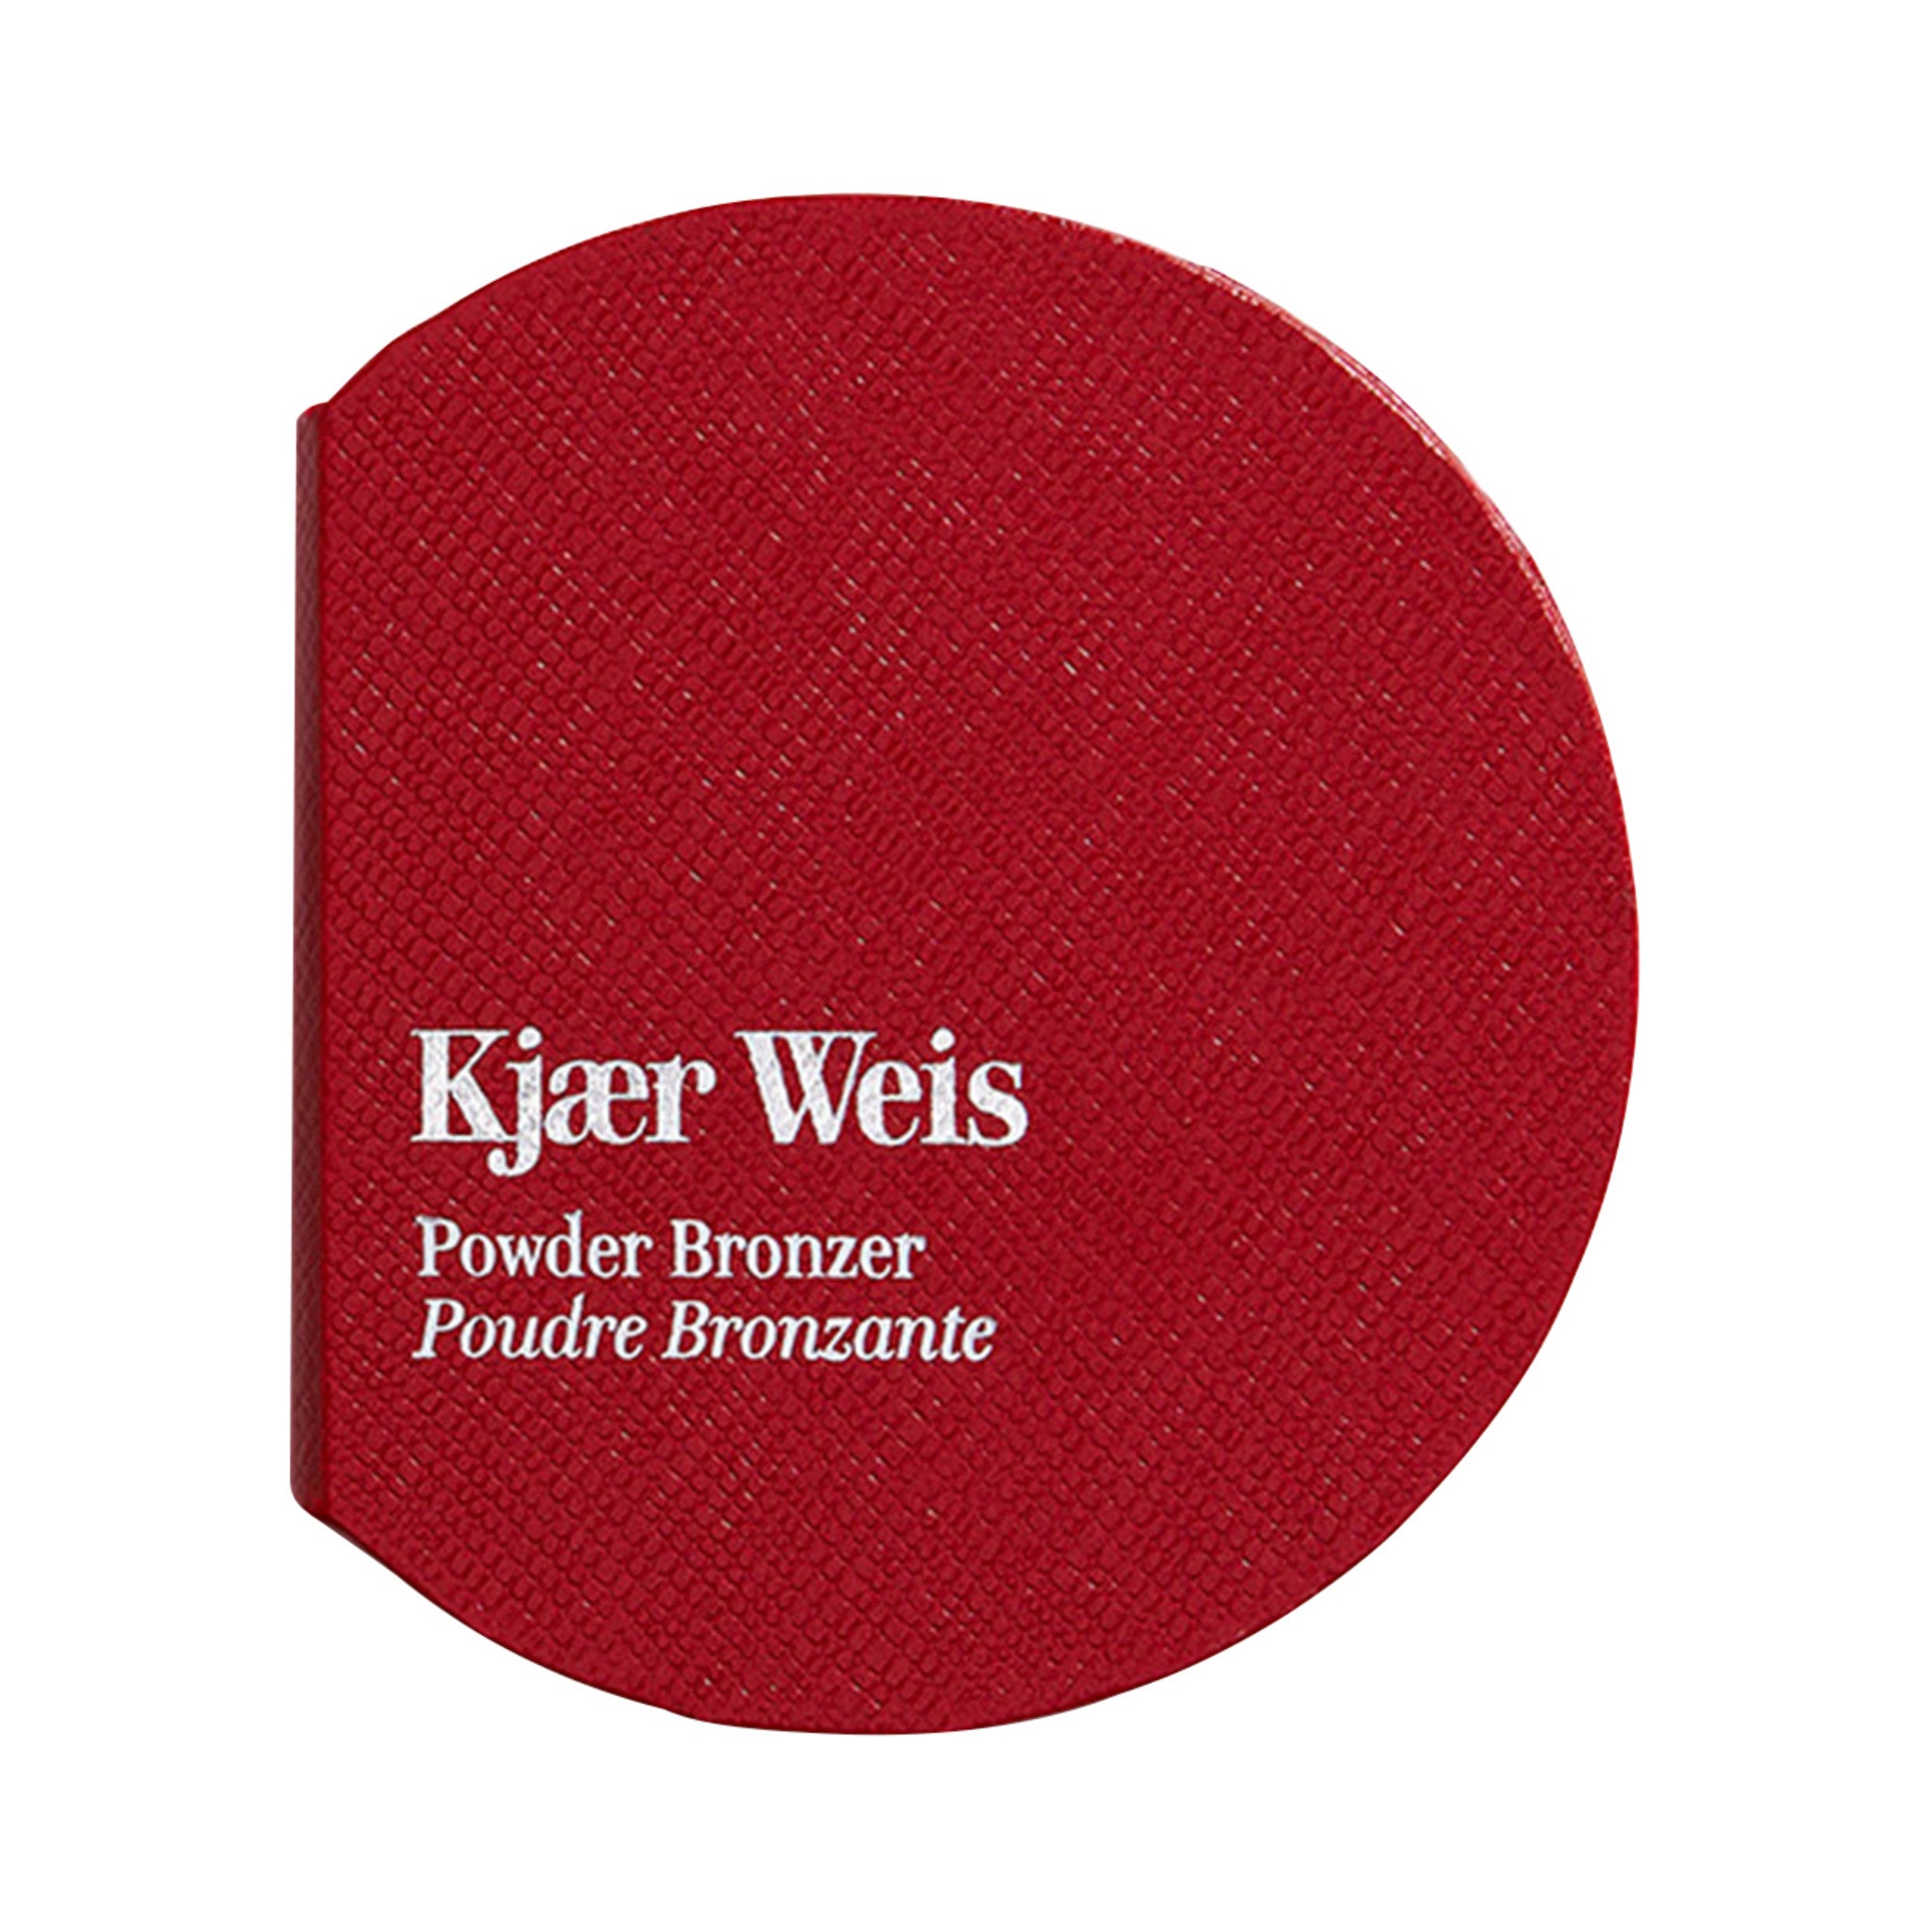 Kjaer Weis Red Edition Powder Bronzer Case main image.